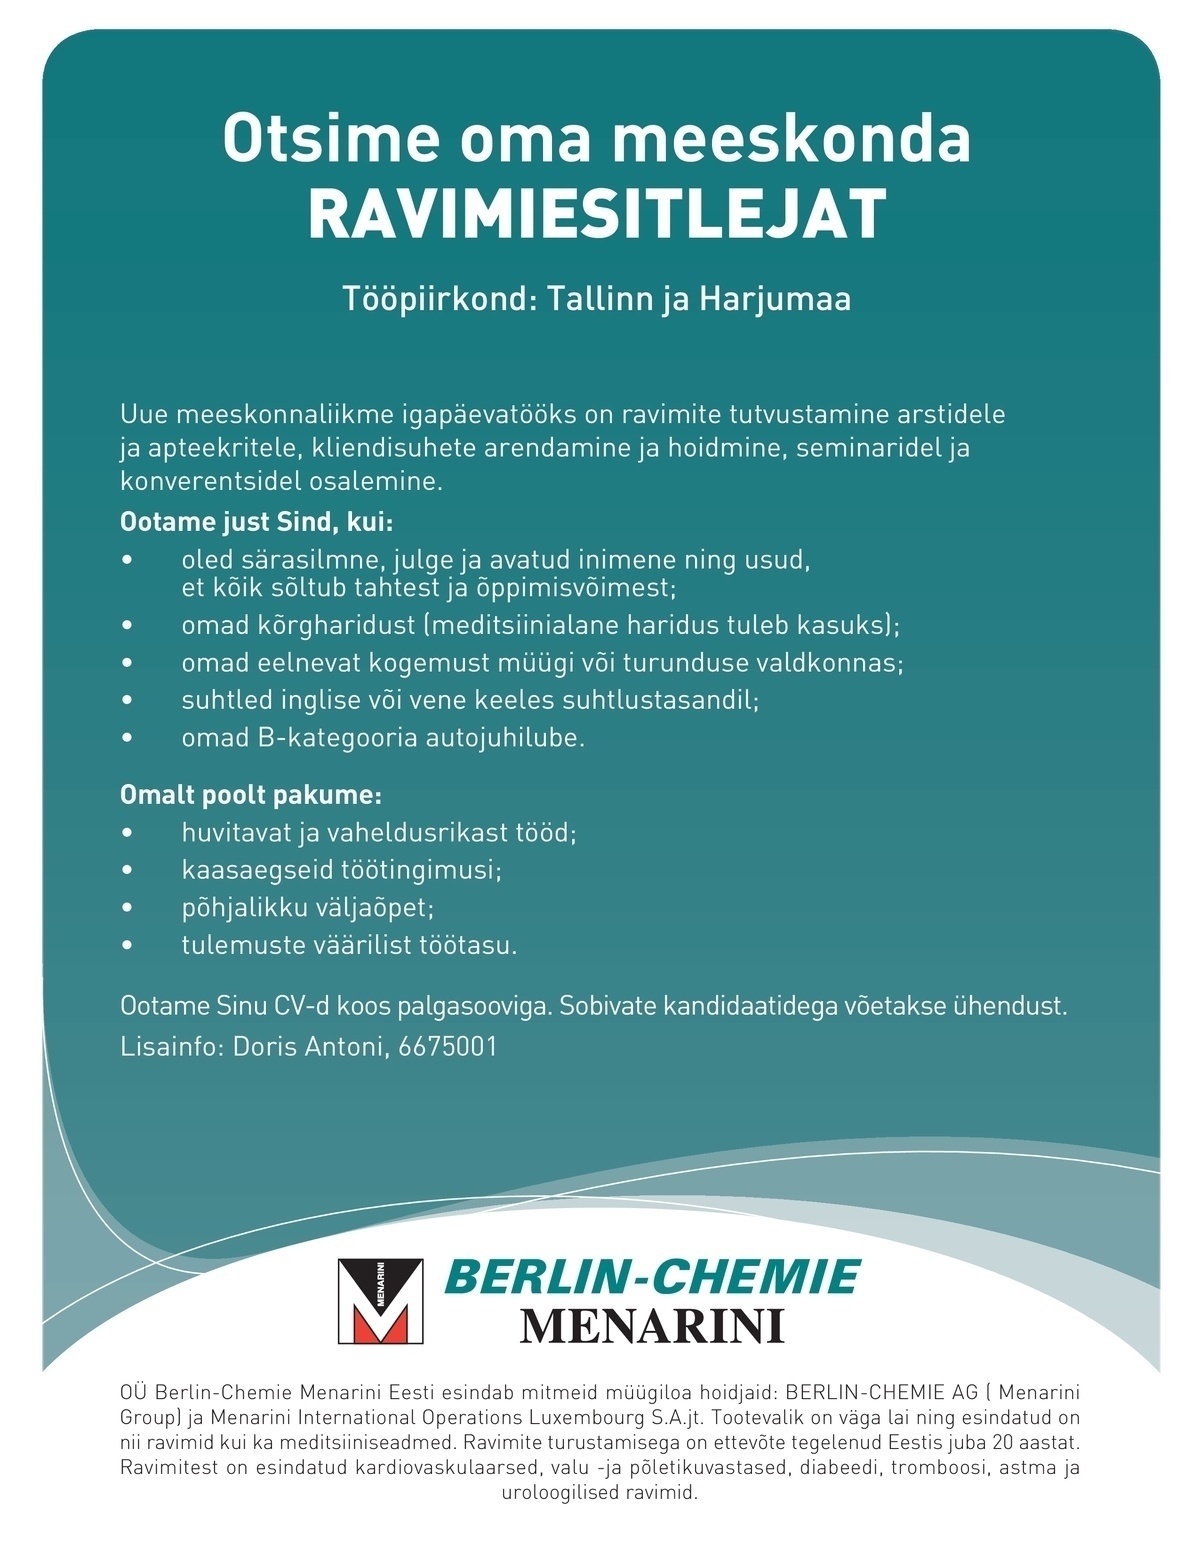 Berlin-Chemie Menarini Eesti OÜ Ravimiesitleja (Tallinn / Harjumaa)